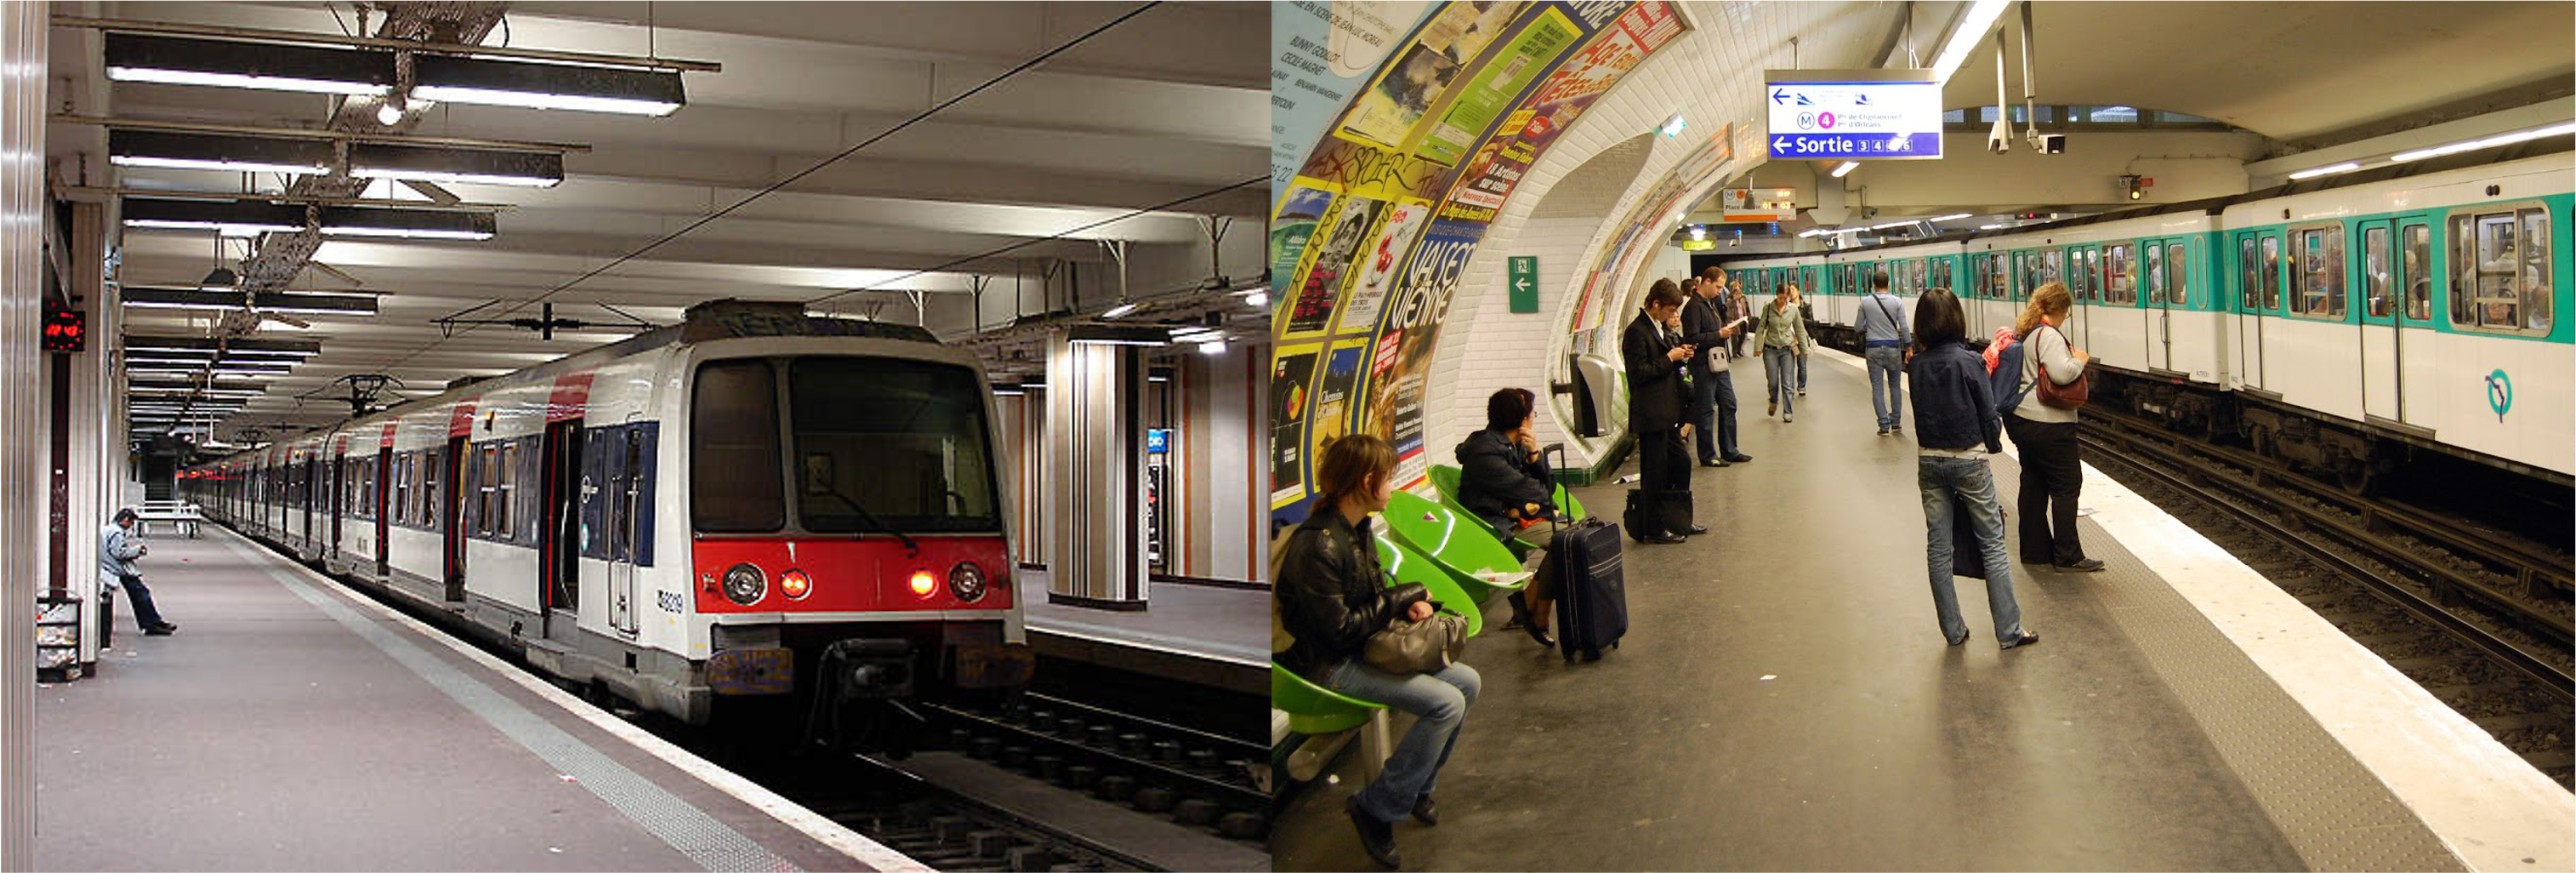 Ga tàu RER và ga metro tại Paris